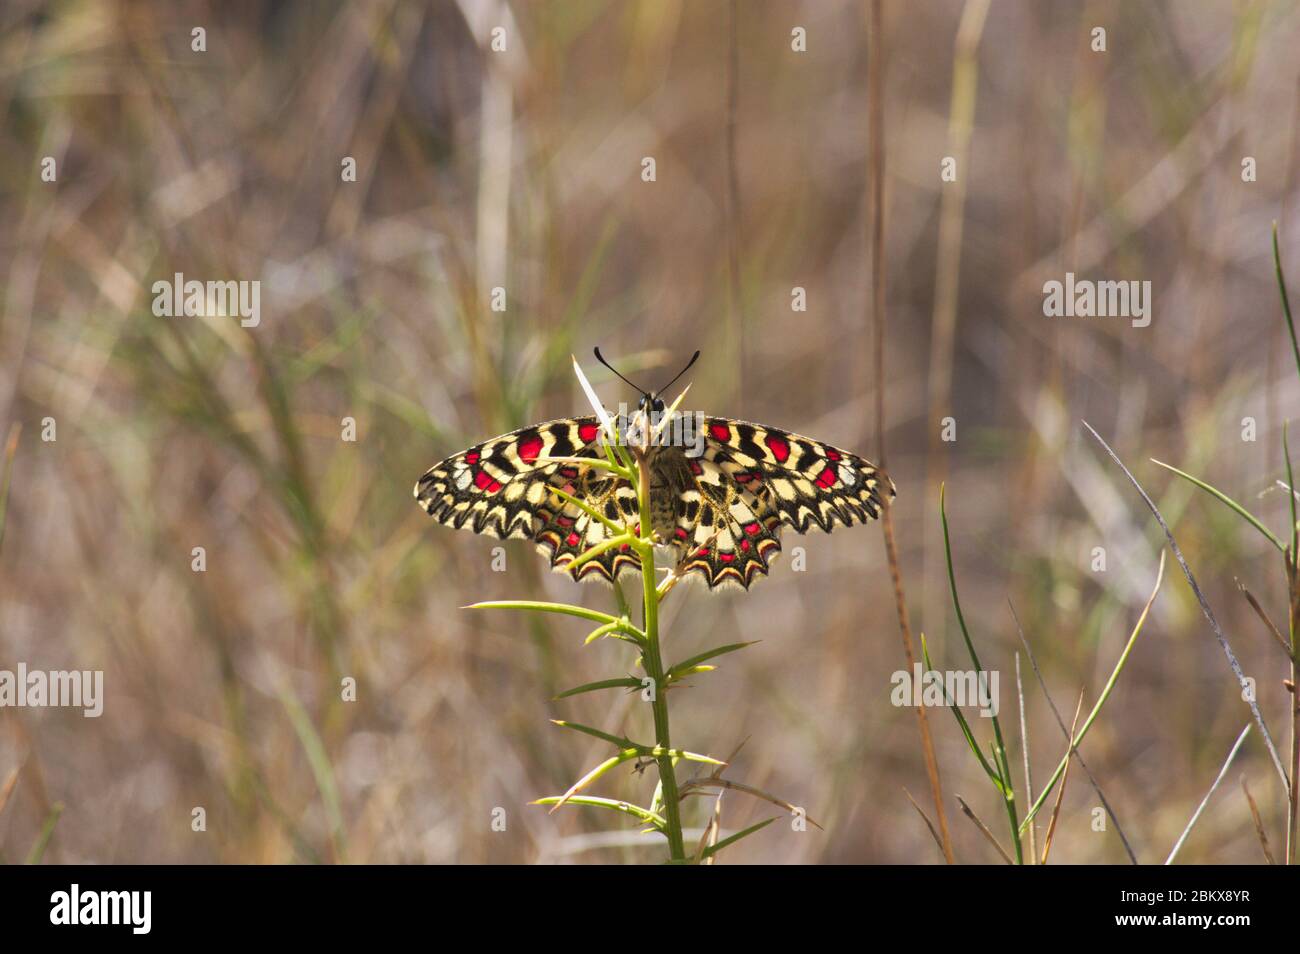 Primo piano di un esemplare di Zerynthia rumina, una farfalla conosciuta come festone spagnolo, mentre riposano al sole in alcune erbe selvatiche Foto Stock